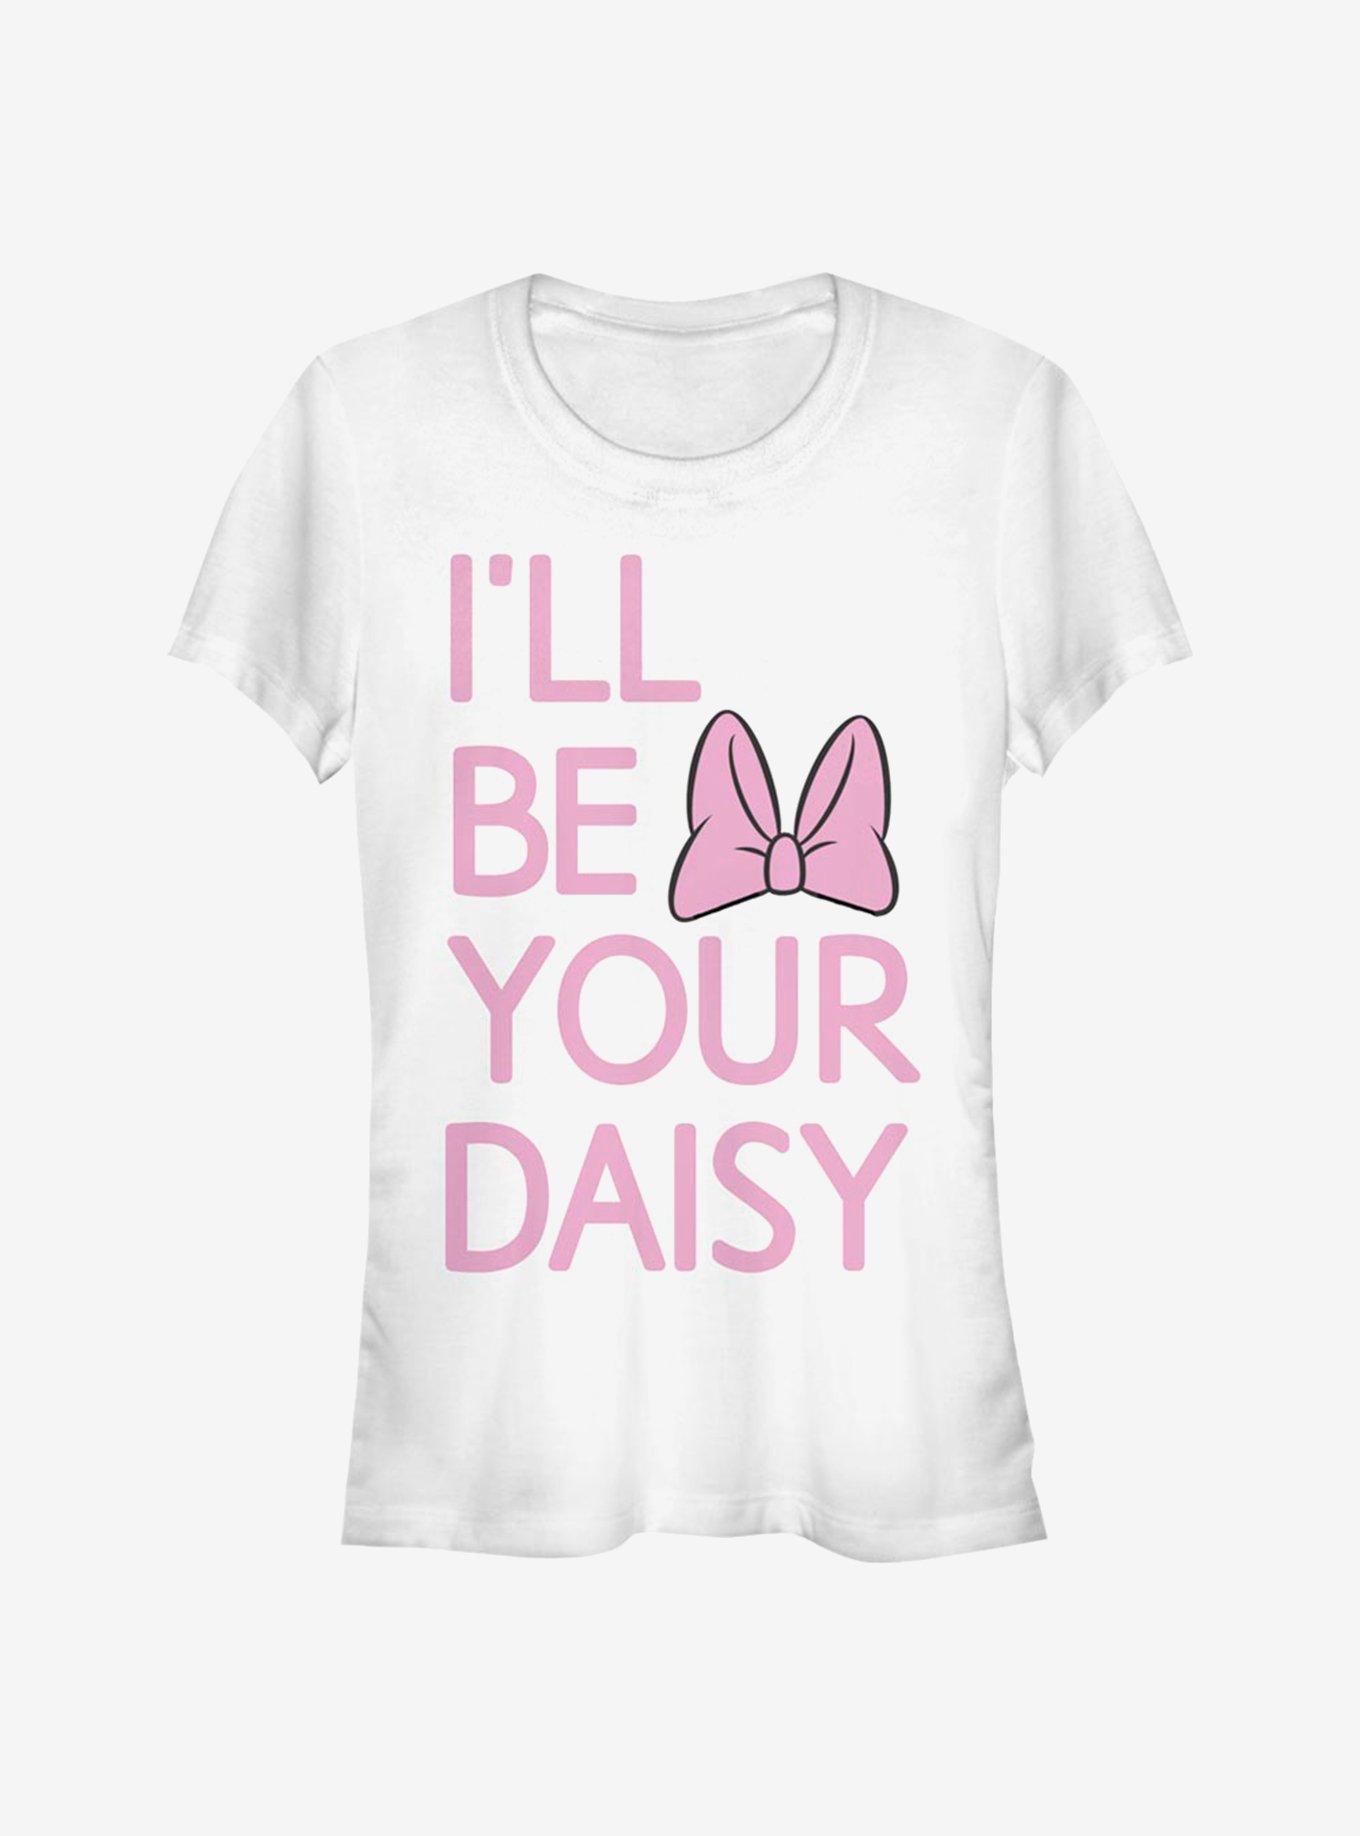 Disney Daisy Duck Your Girls T-Shirt